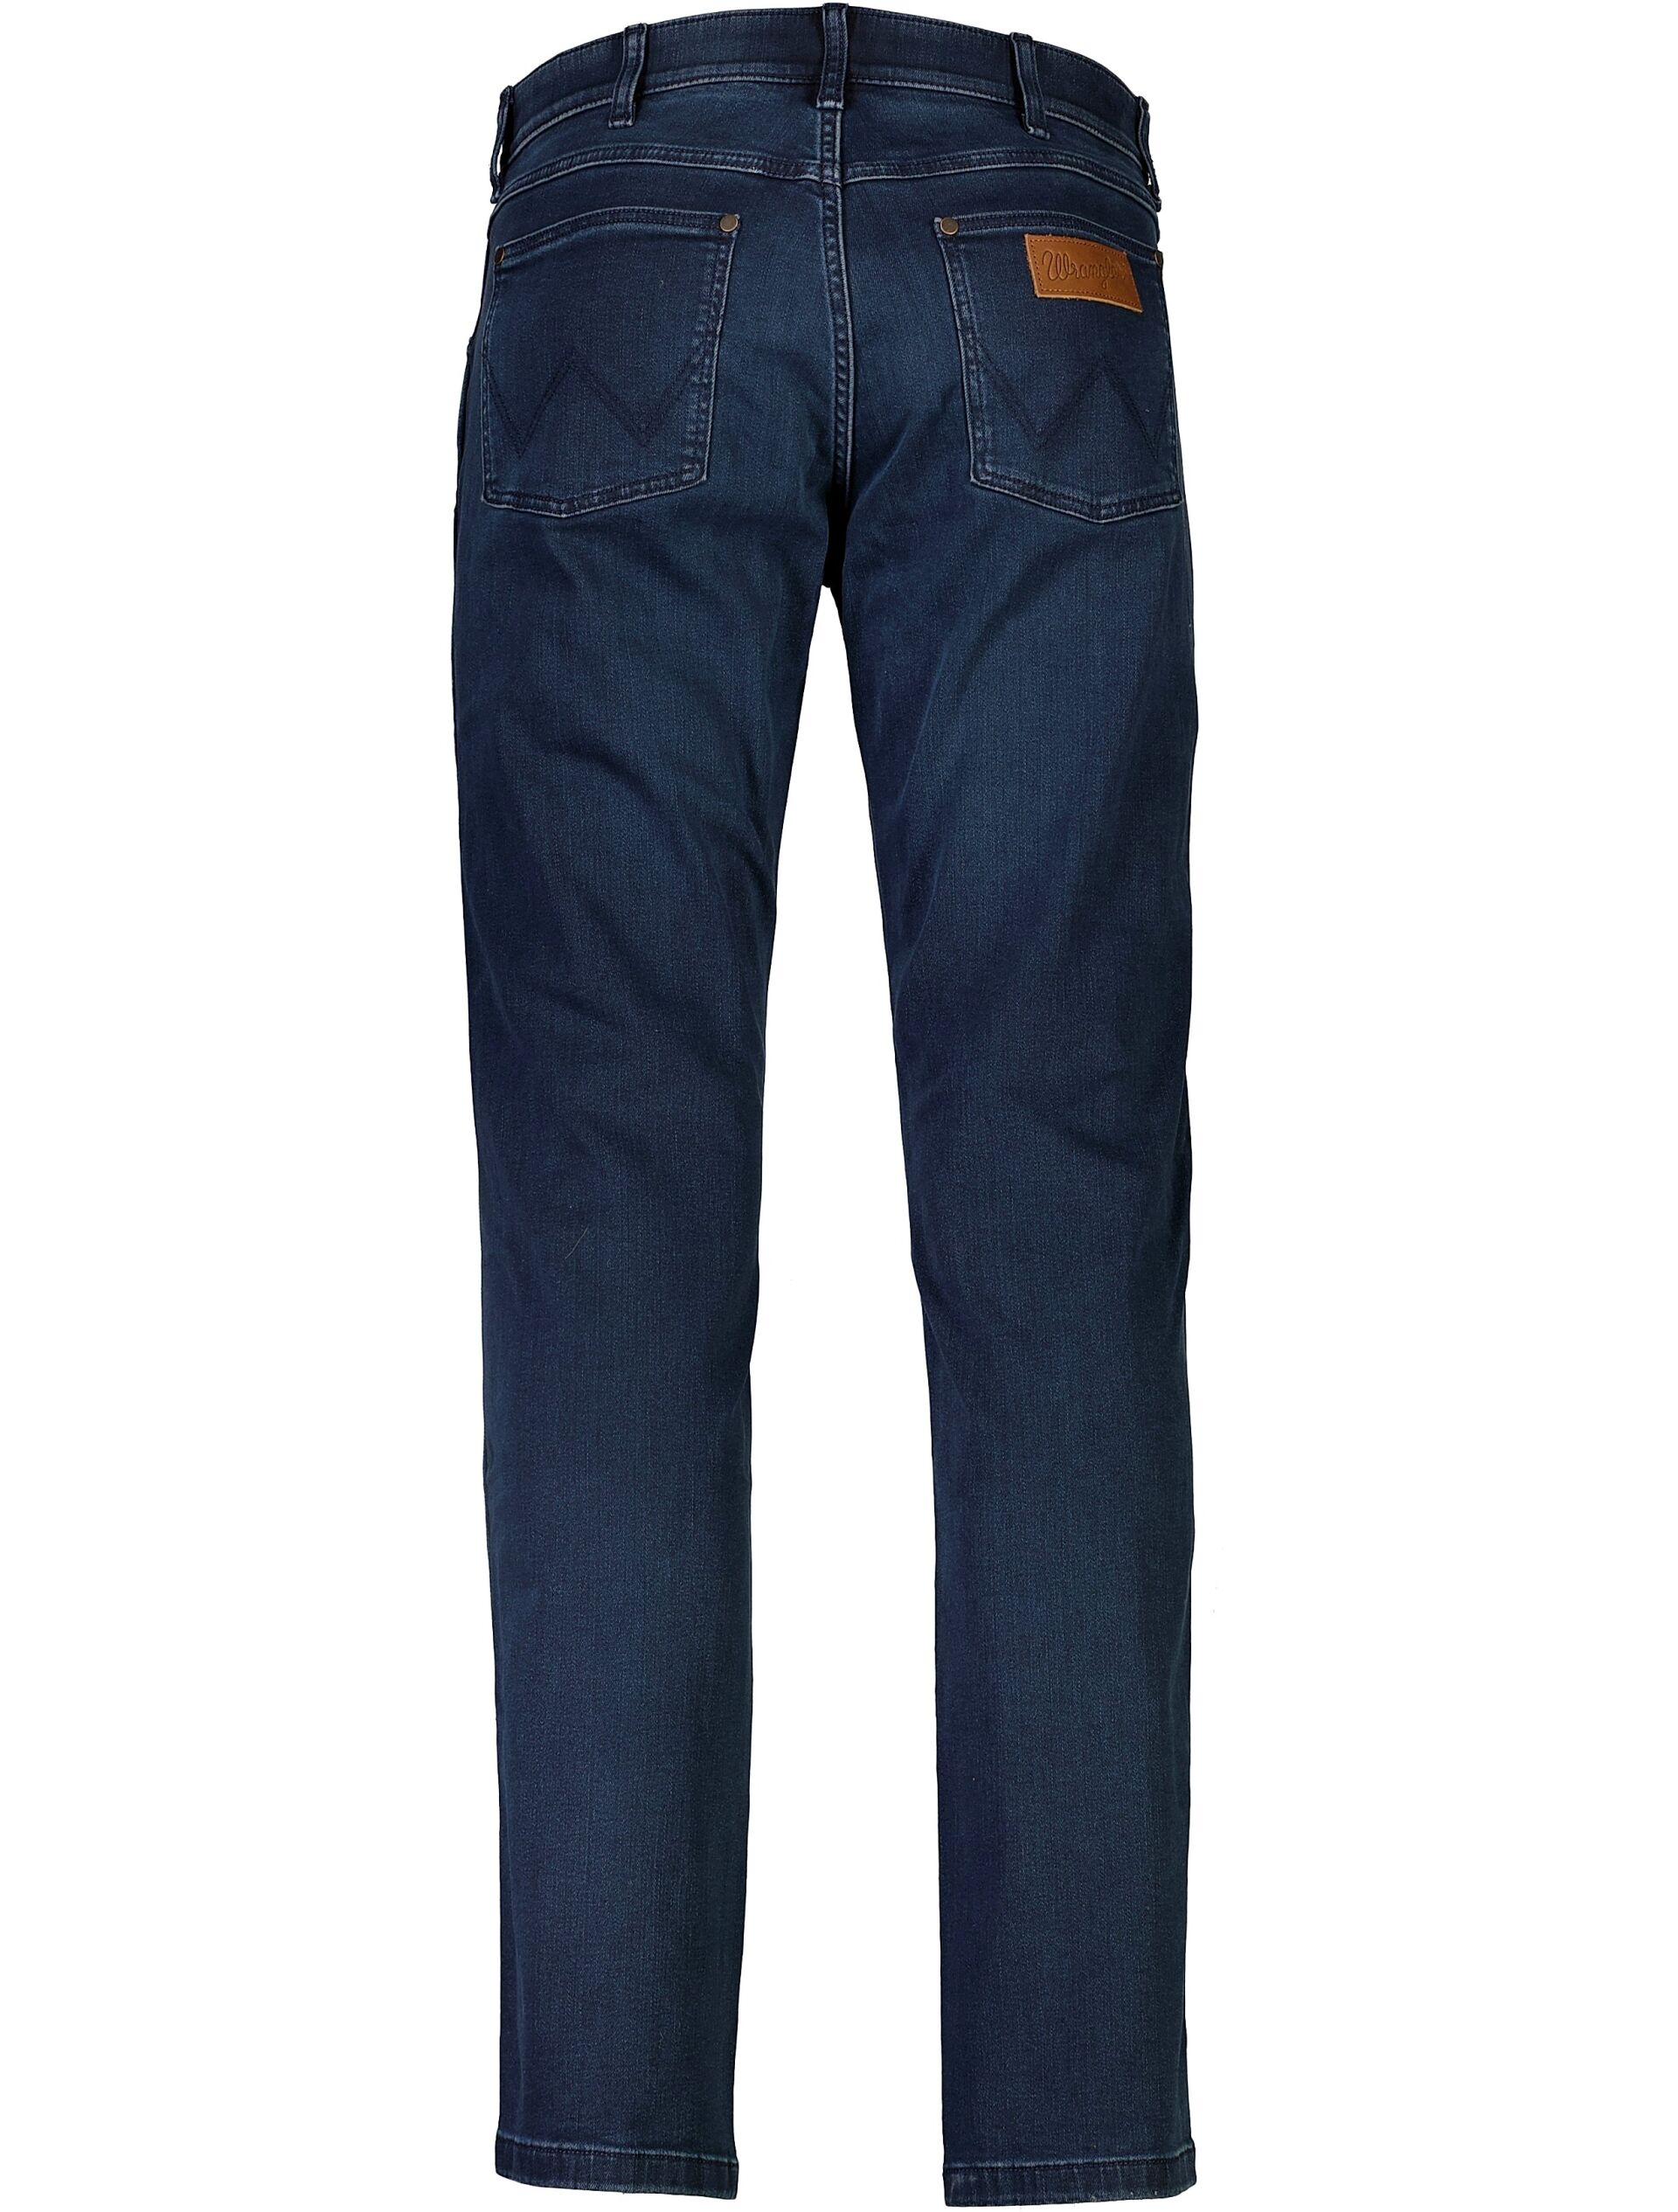 Wrangler  Jeans 90-000595